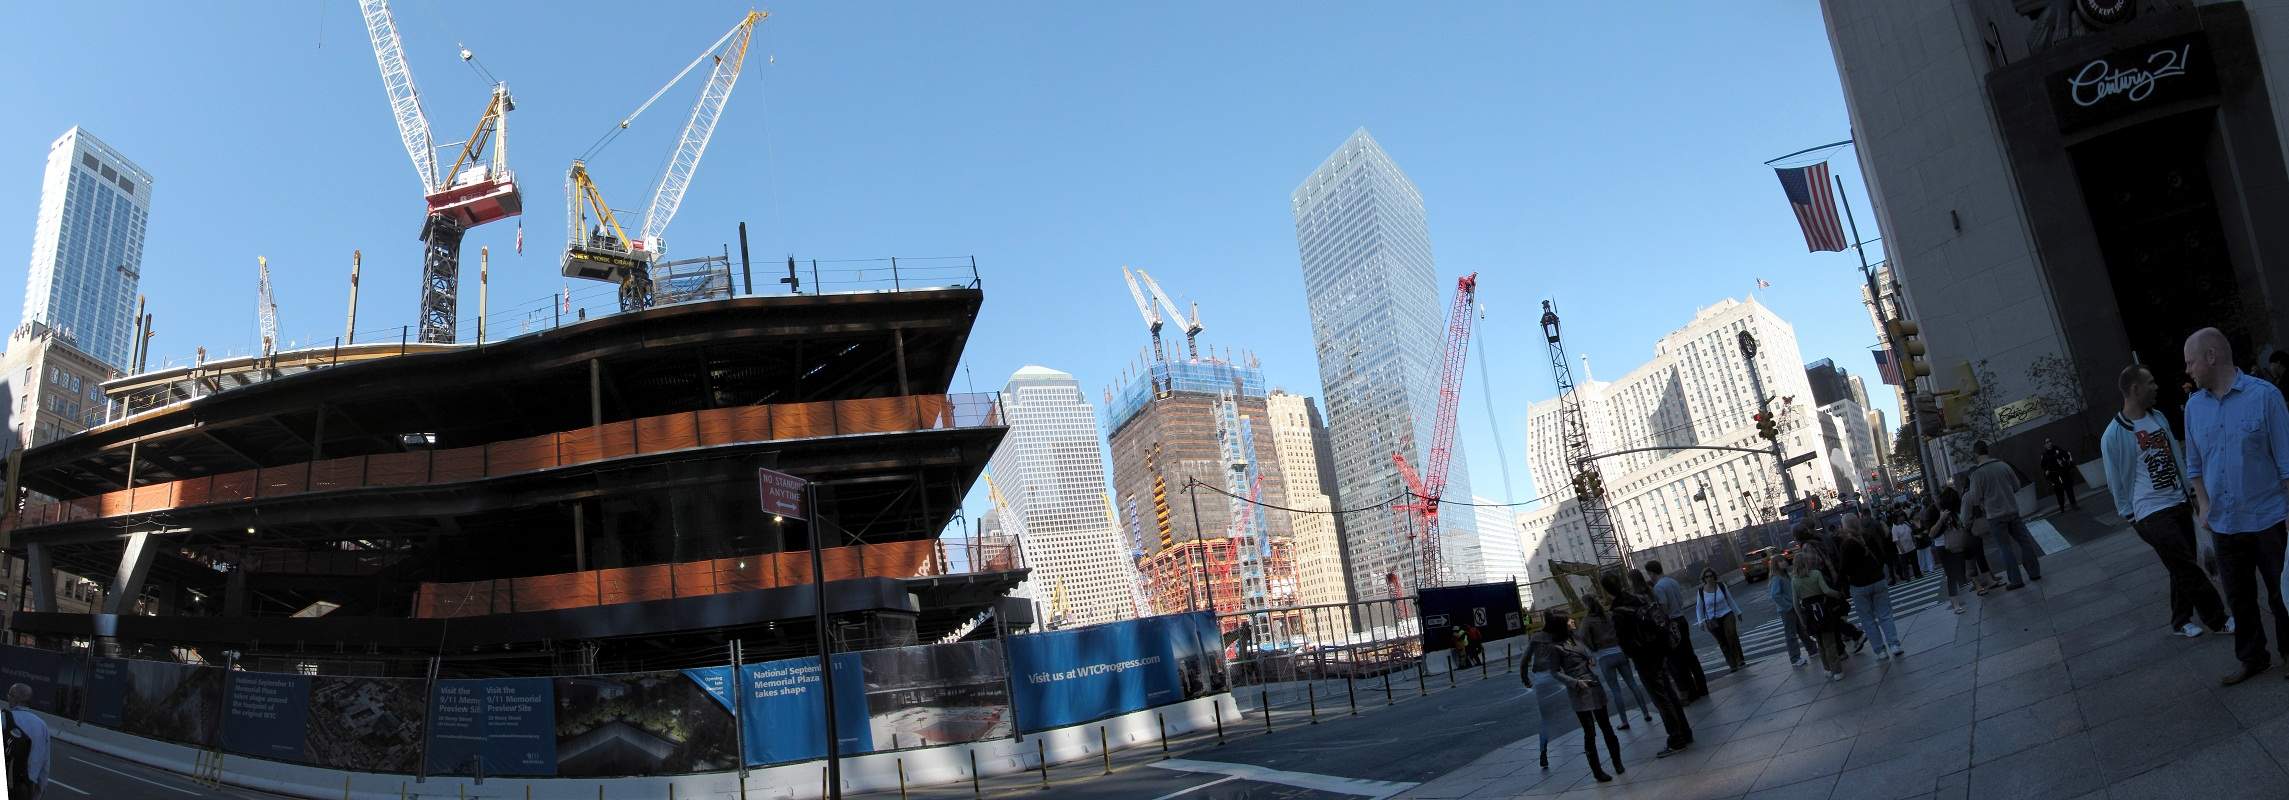 New York City Panorama Ground Zero